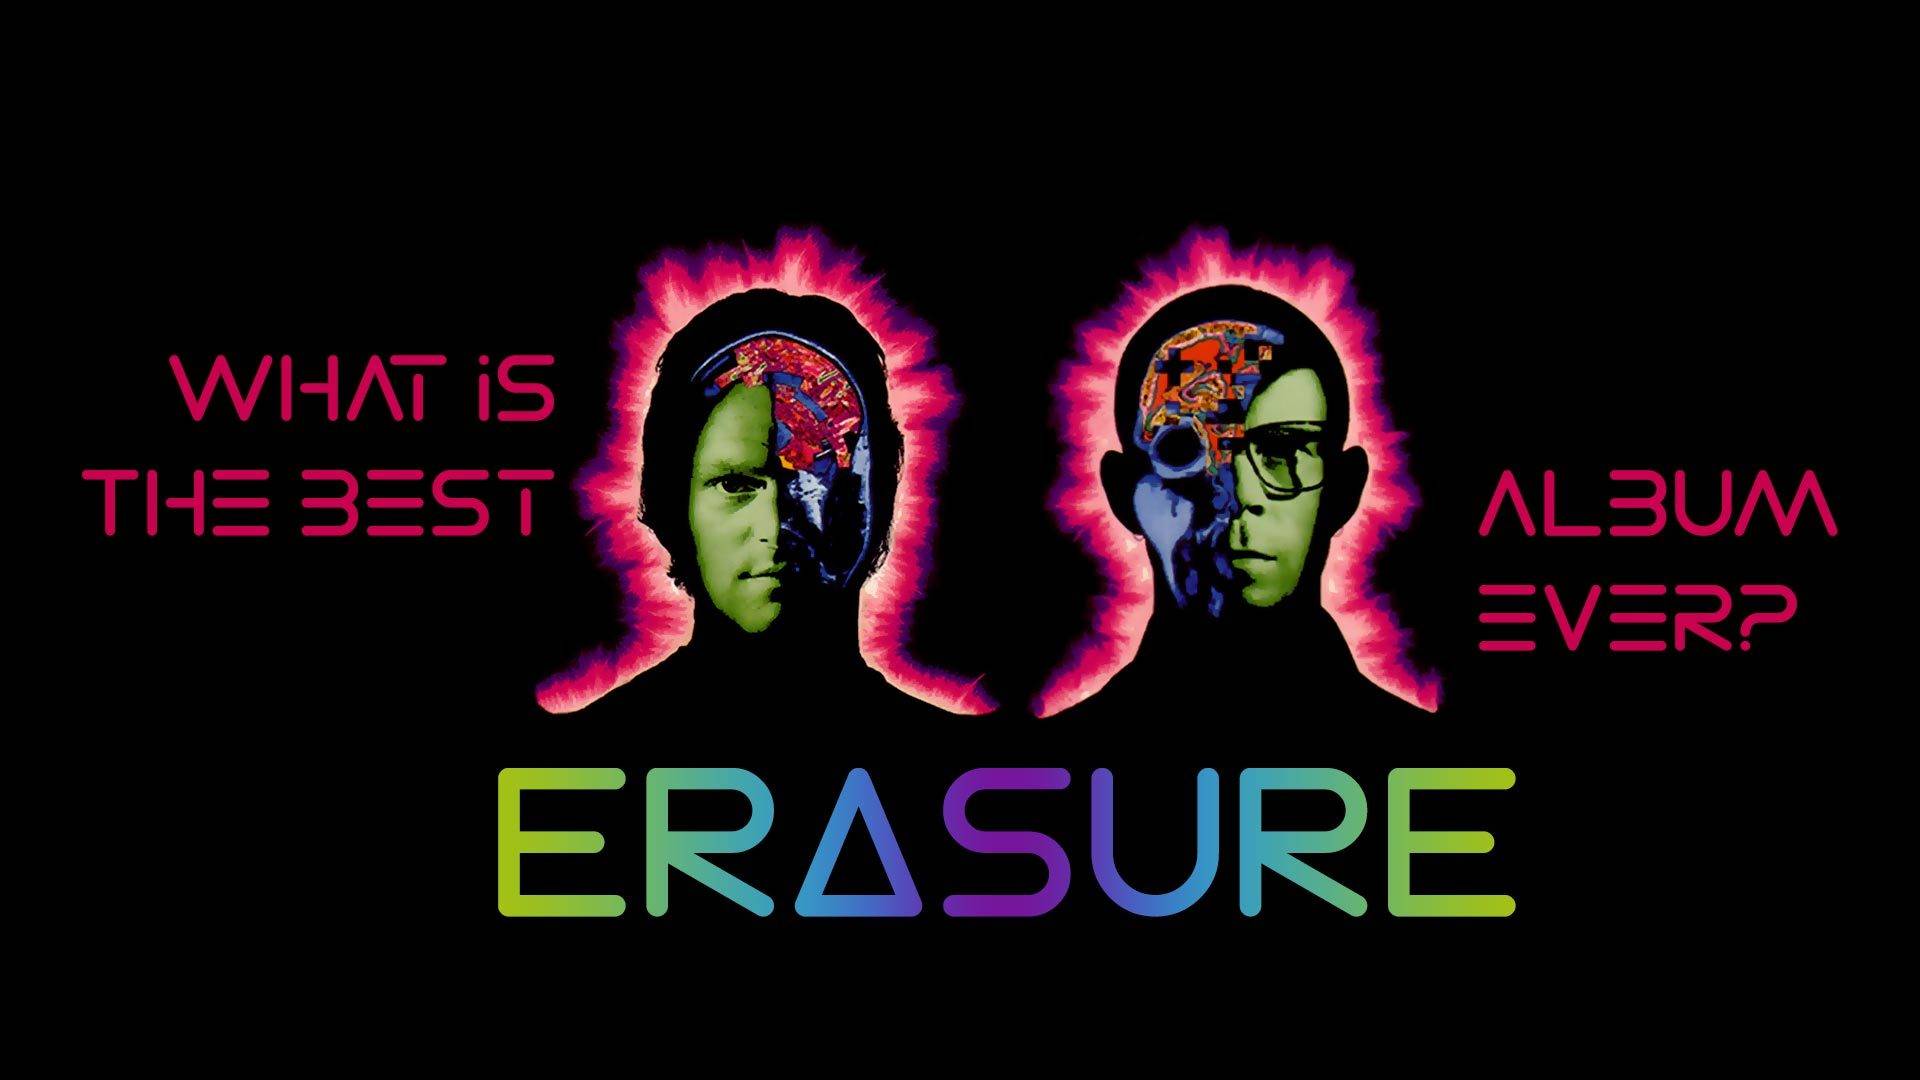 What is the best Erasure album ever?